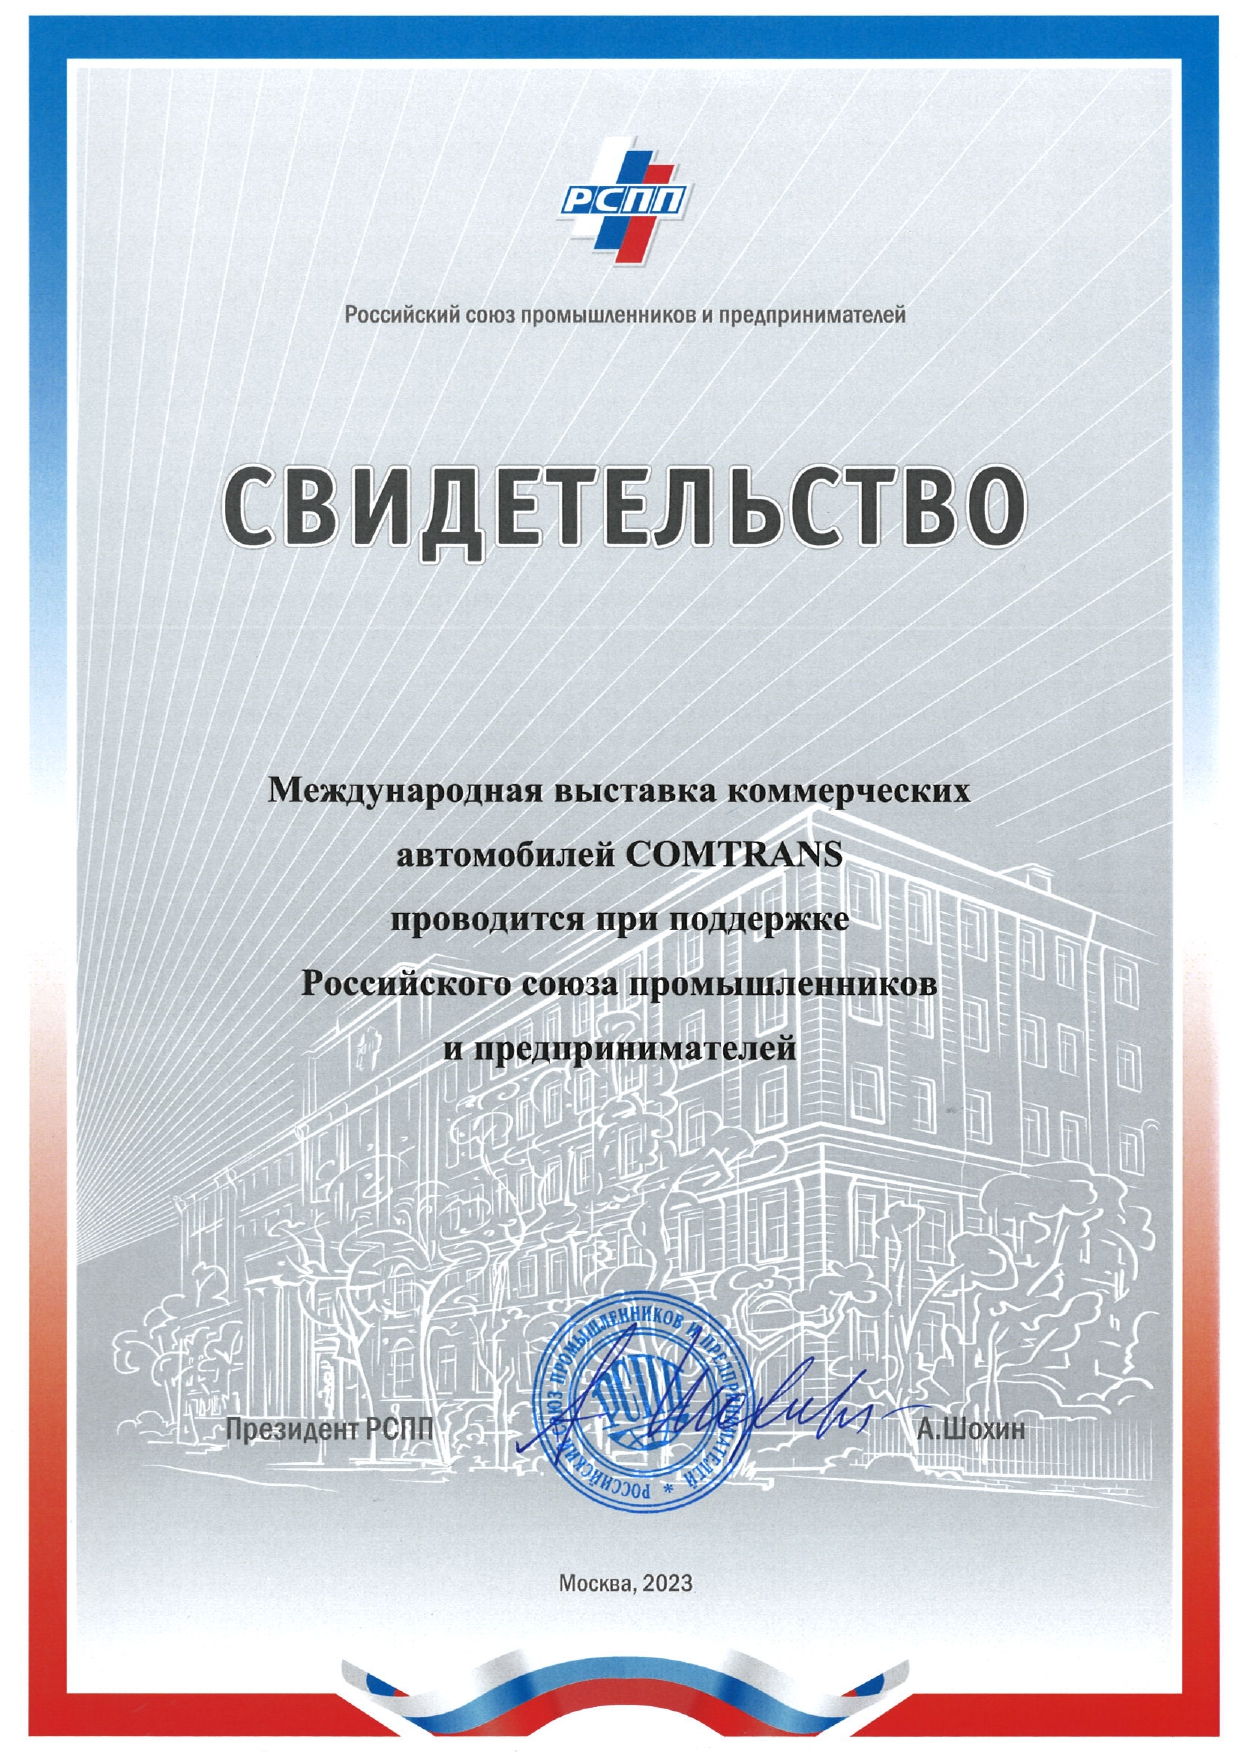 Президент Российского союза промышленников и предпринимателей поприветствовал участников и посетителей выставки COMTRANS